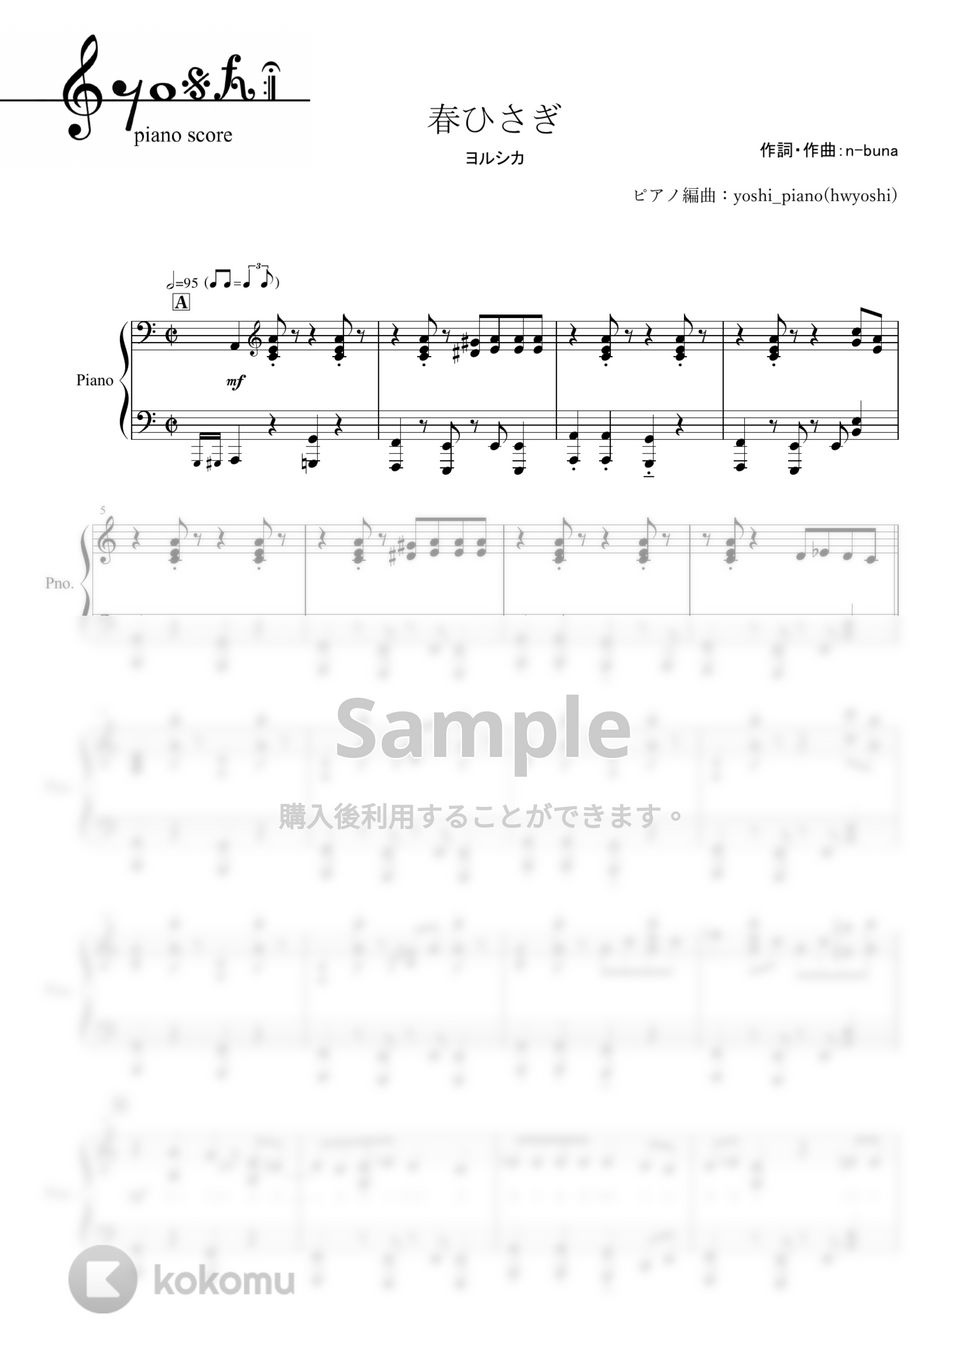 ヨルシカ - 春ひさぎ (ピアノ楽譜/全８ページ) by yoshi